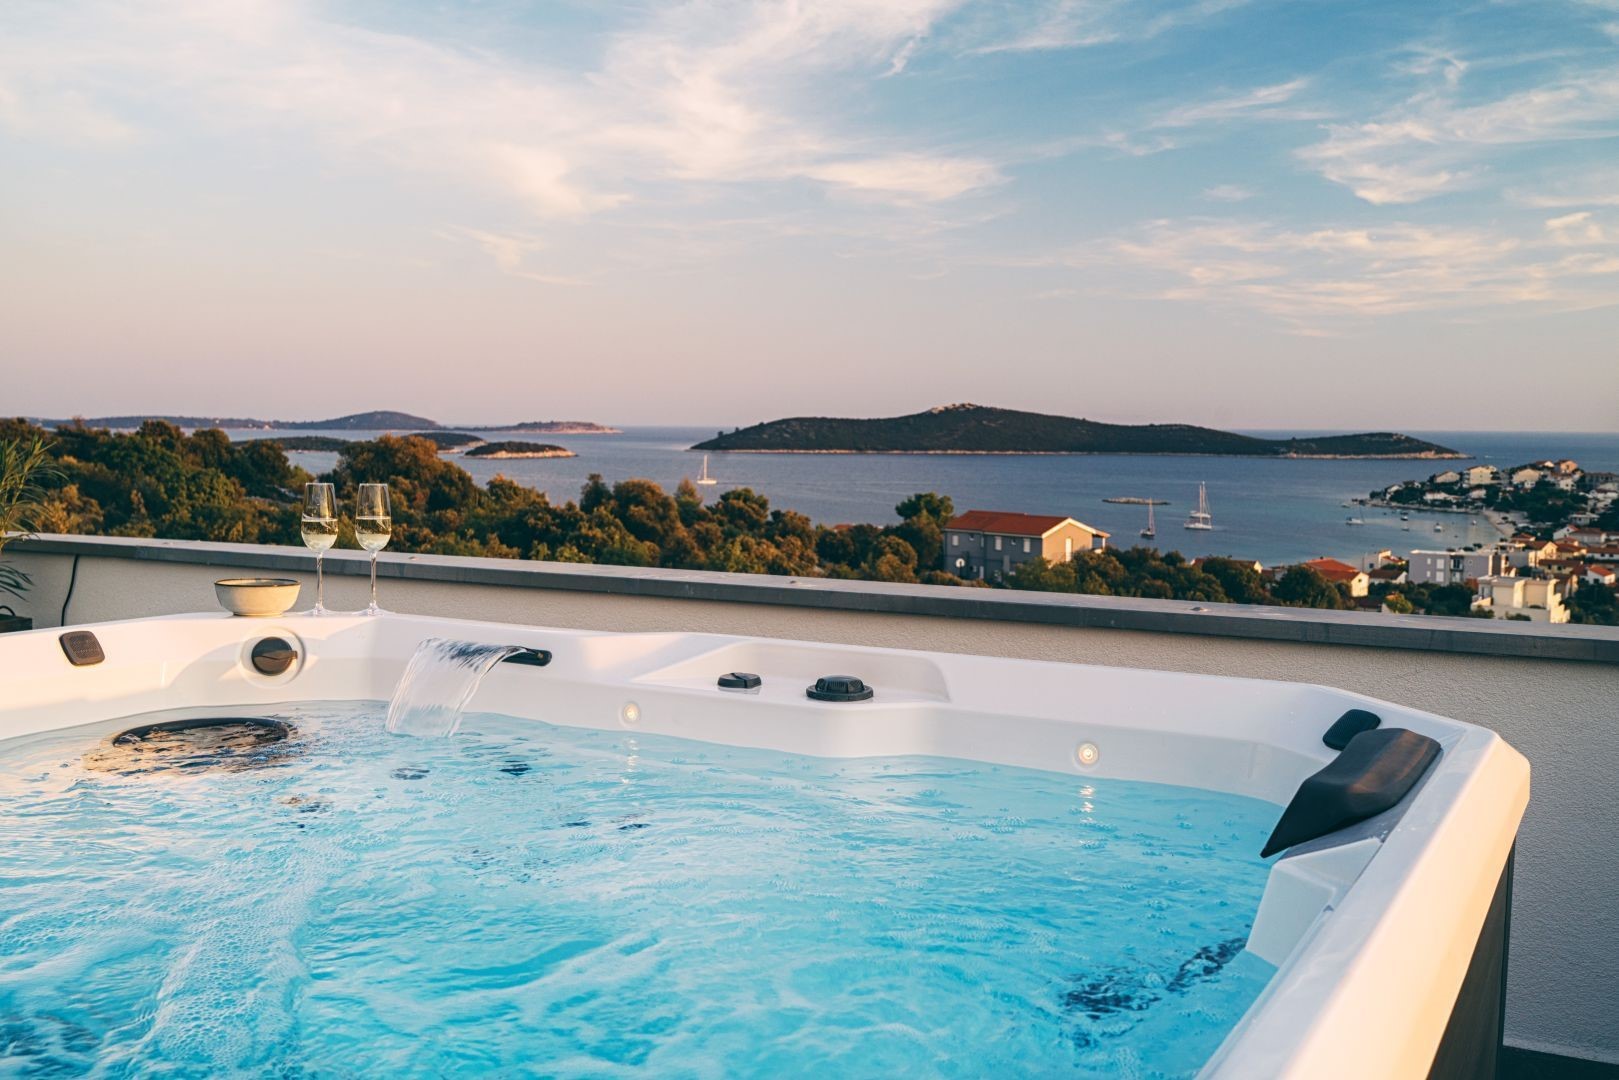 Whirlpool im Freien der kroatischen luxuriösen Mietvilla Adoreum mit Meerblick, perfekt zum Entspannen mit Freunden und Familie